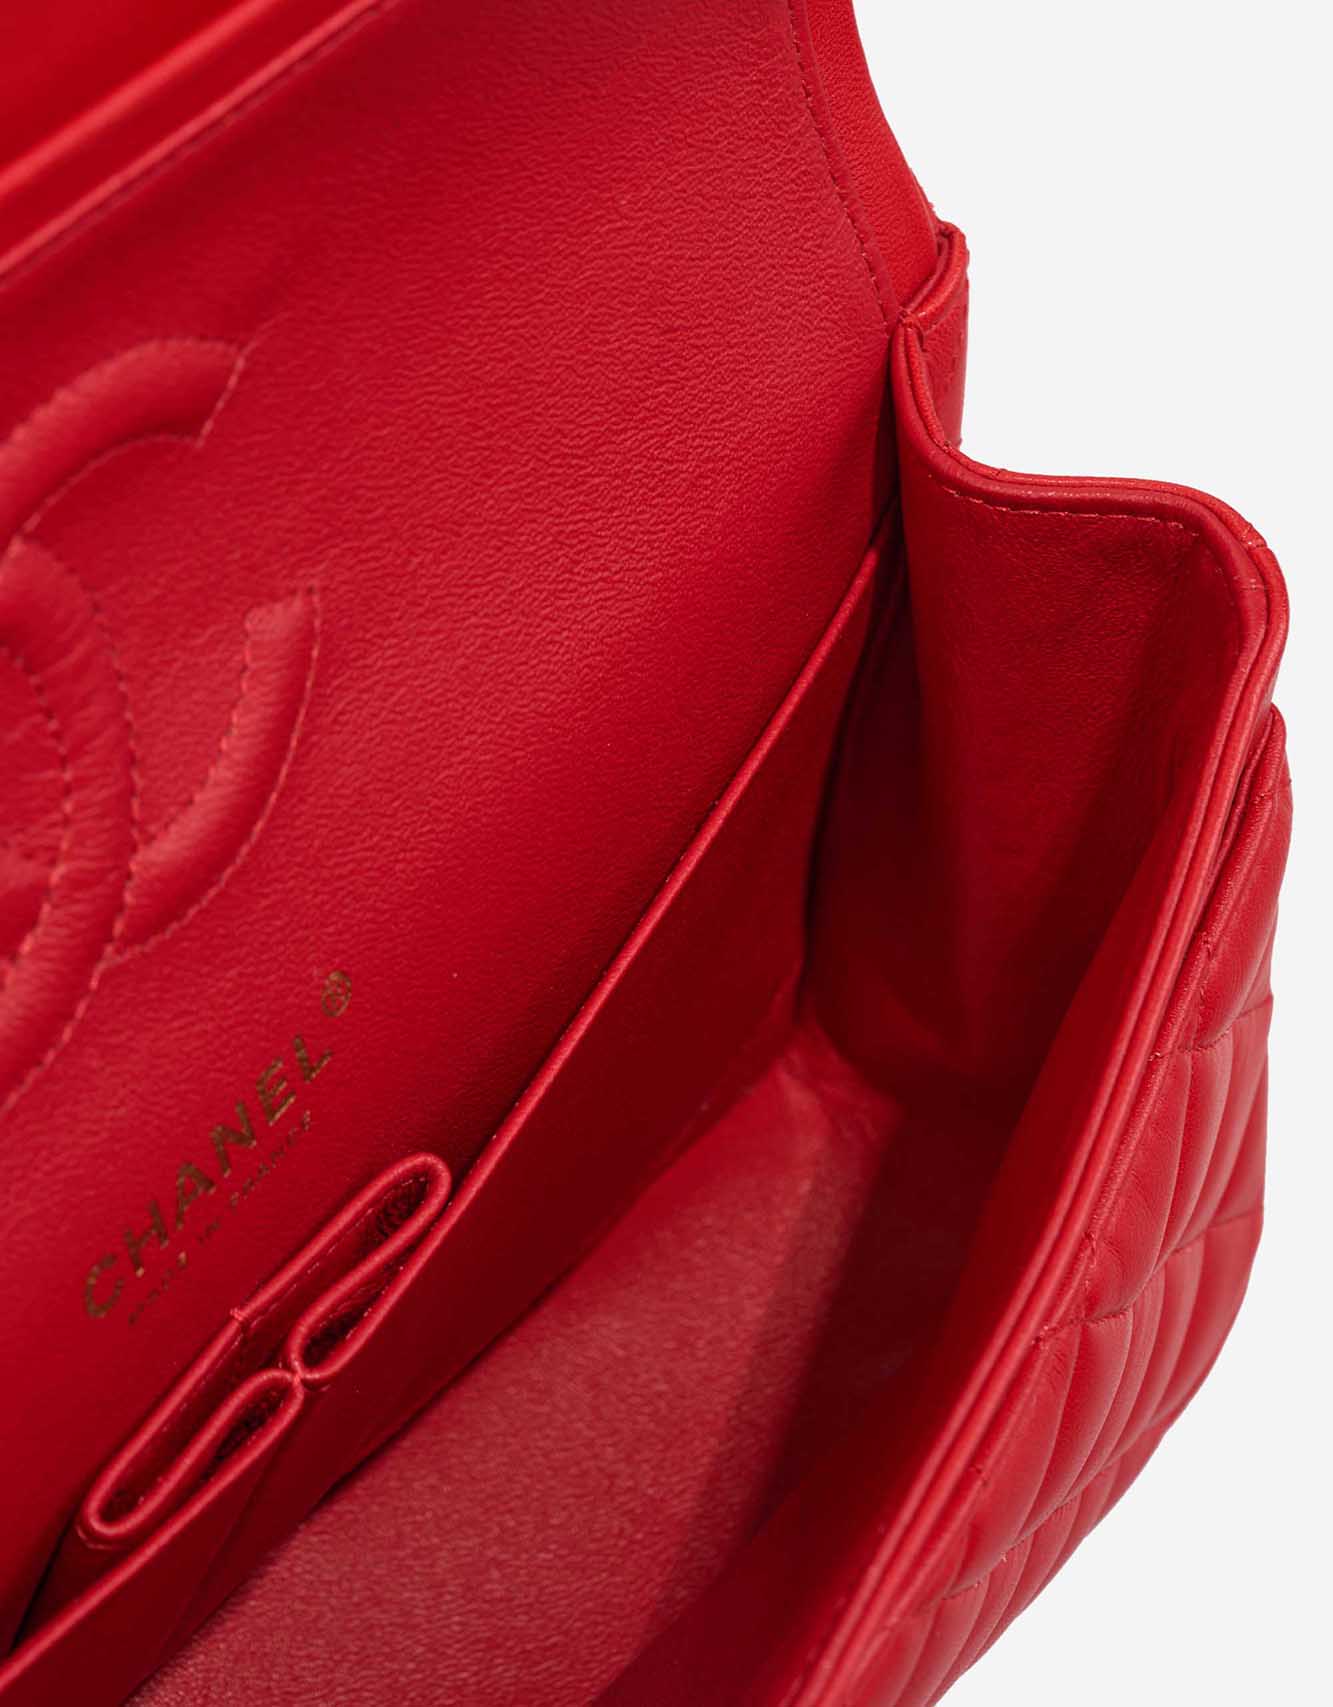 Chanel Timeless Medium Lamb Red Inside | Sell your designer bag